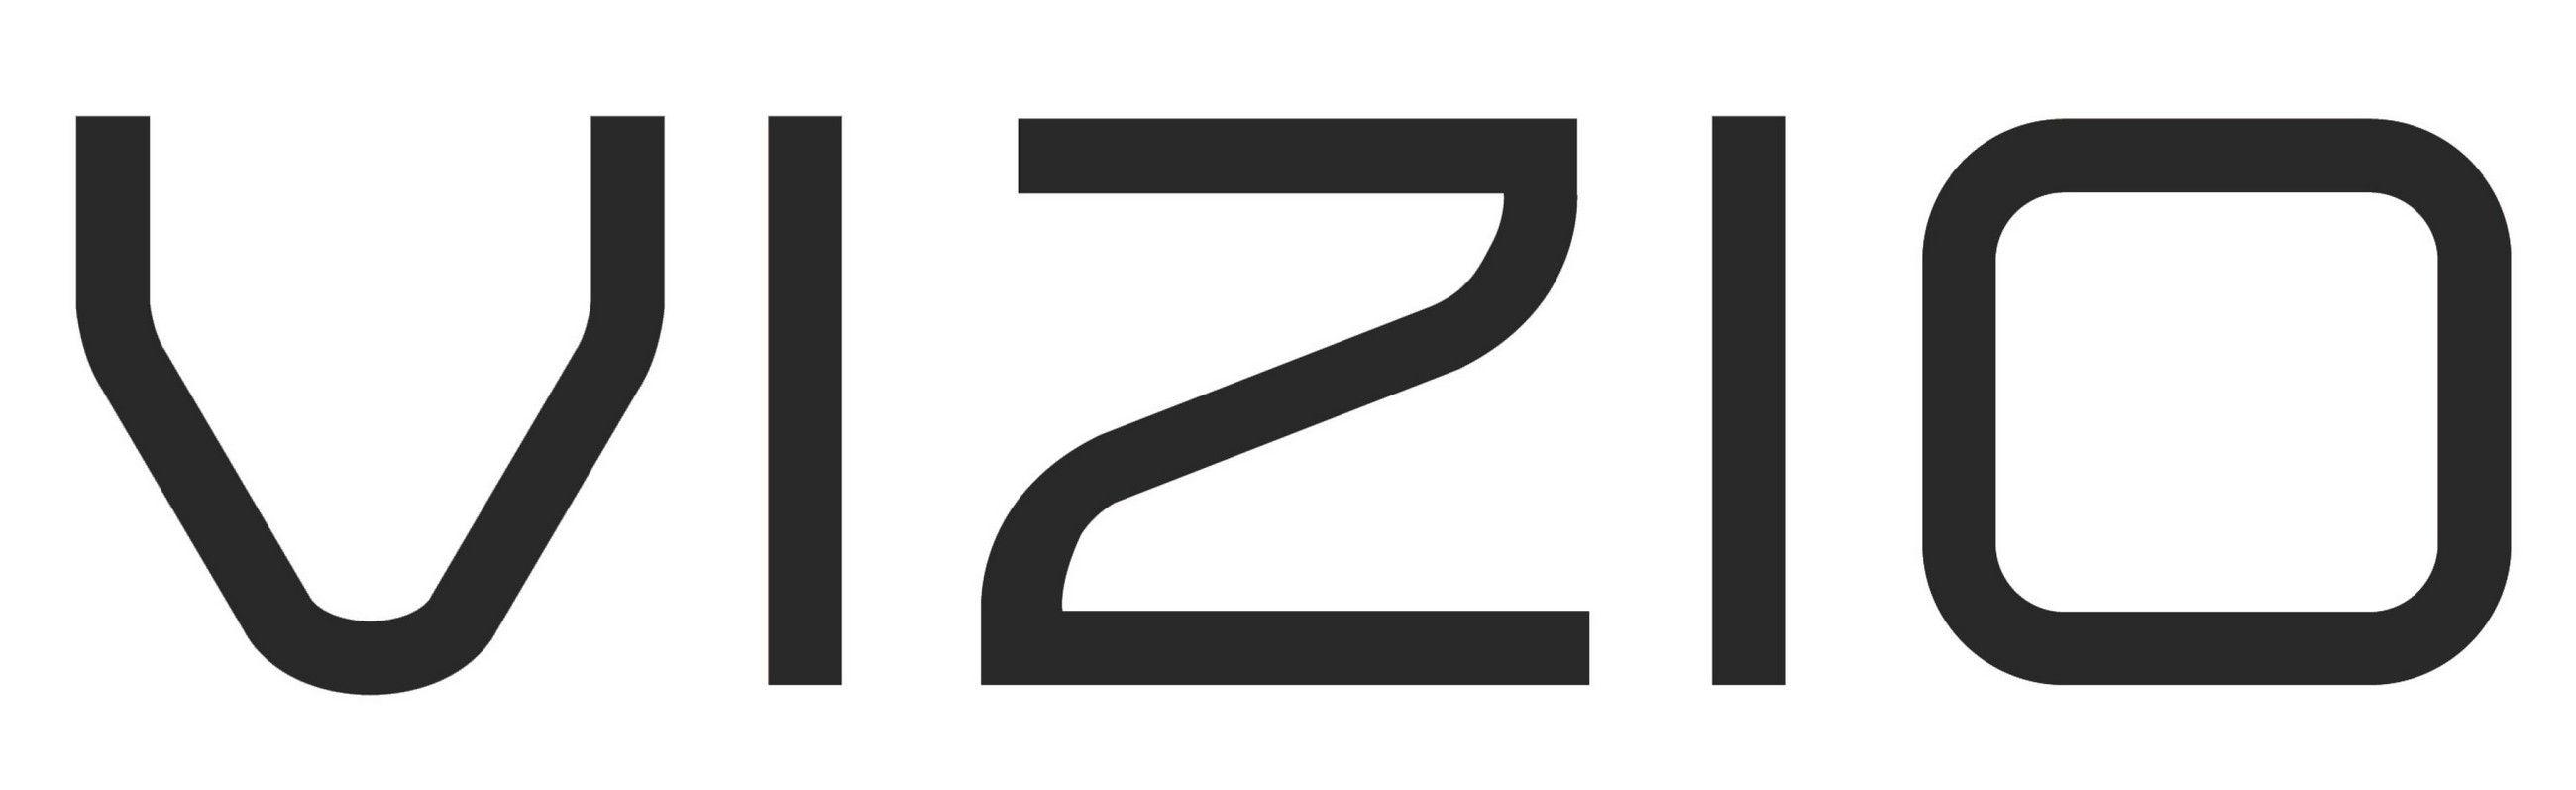 Vizio TV Logo - Vizio Logo